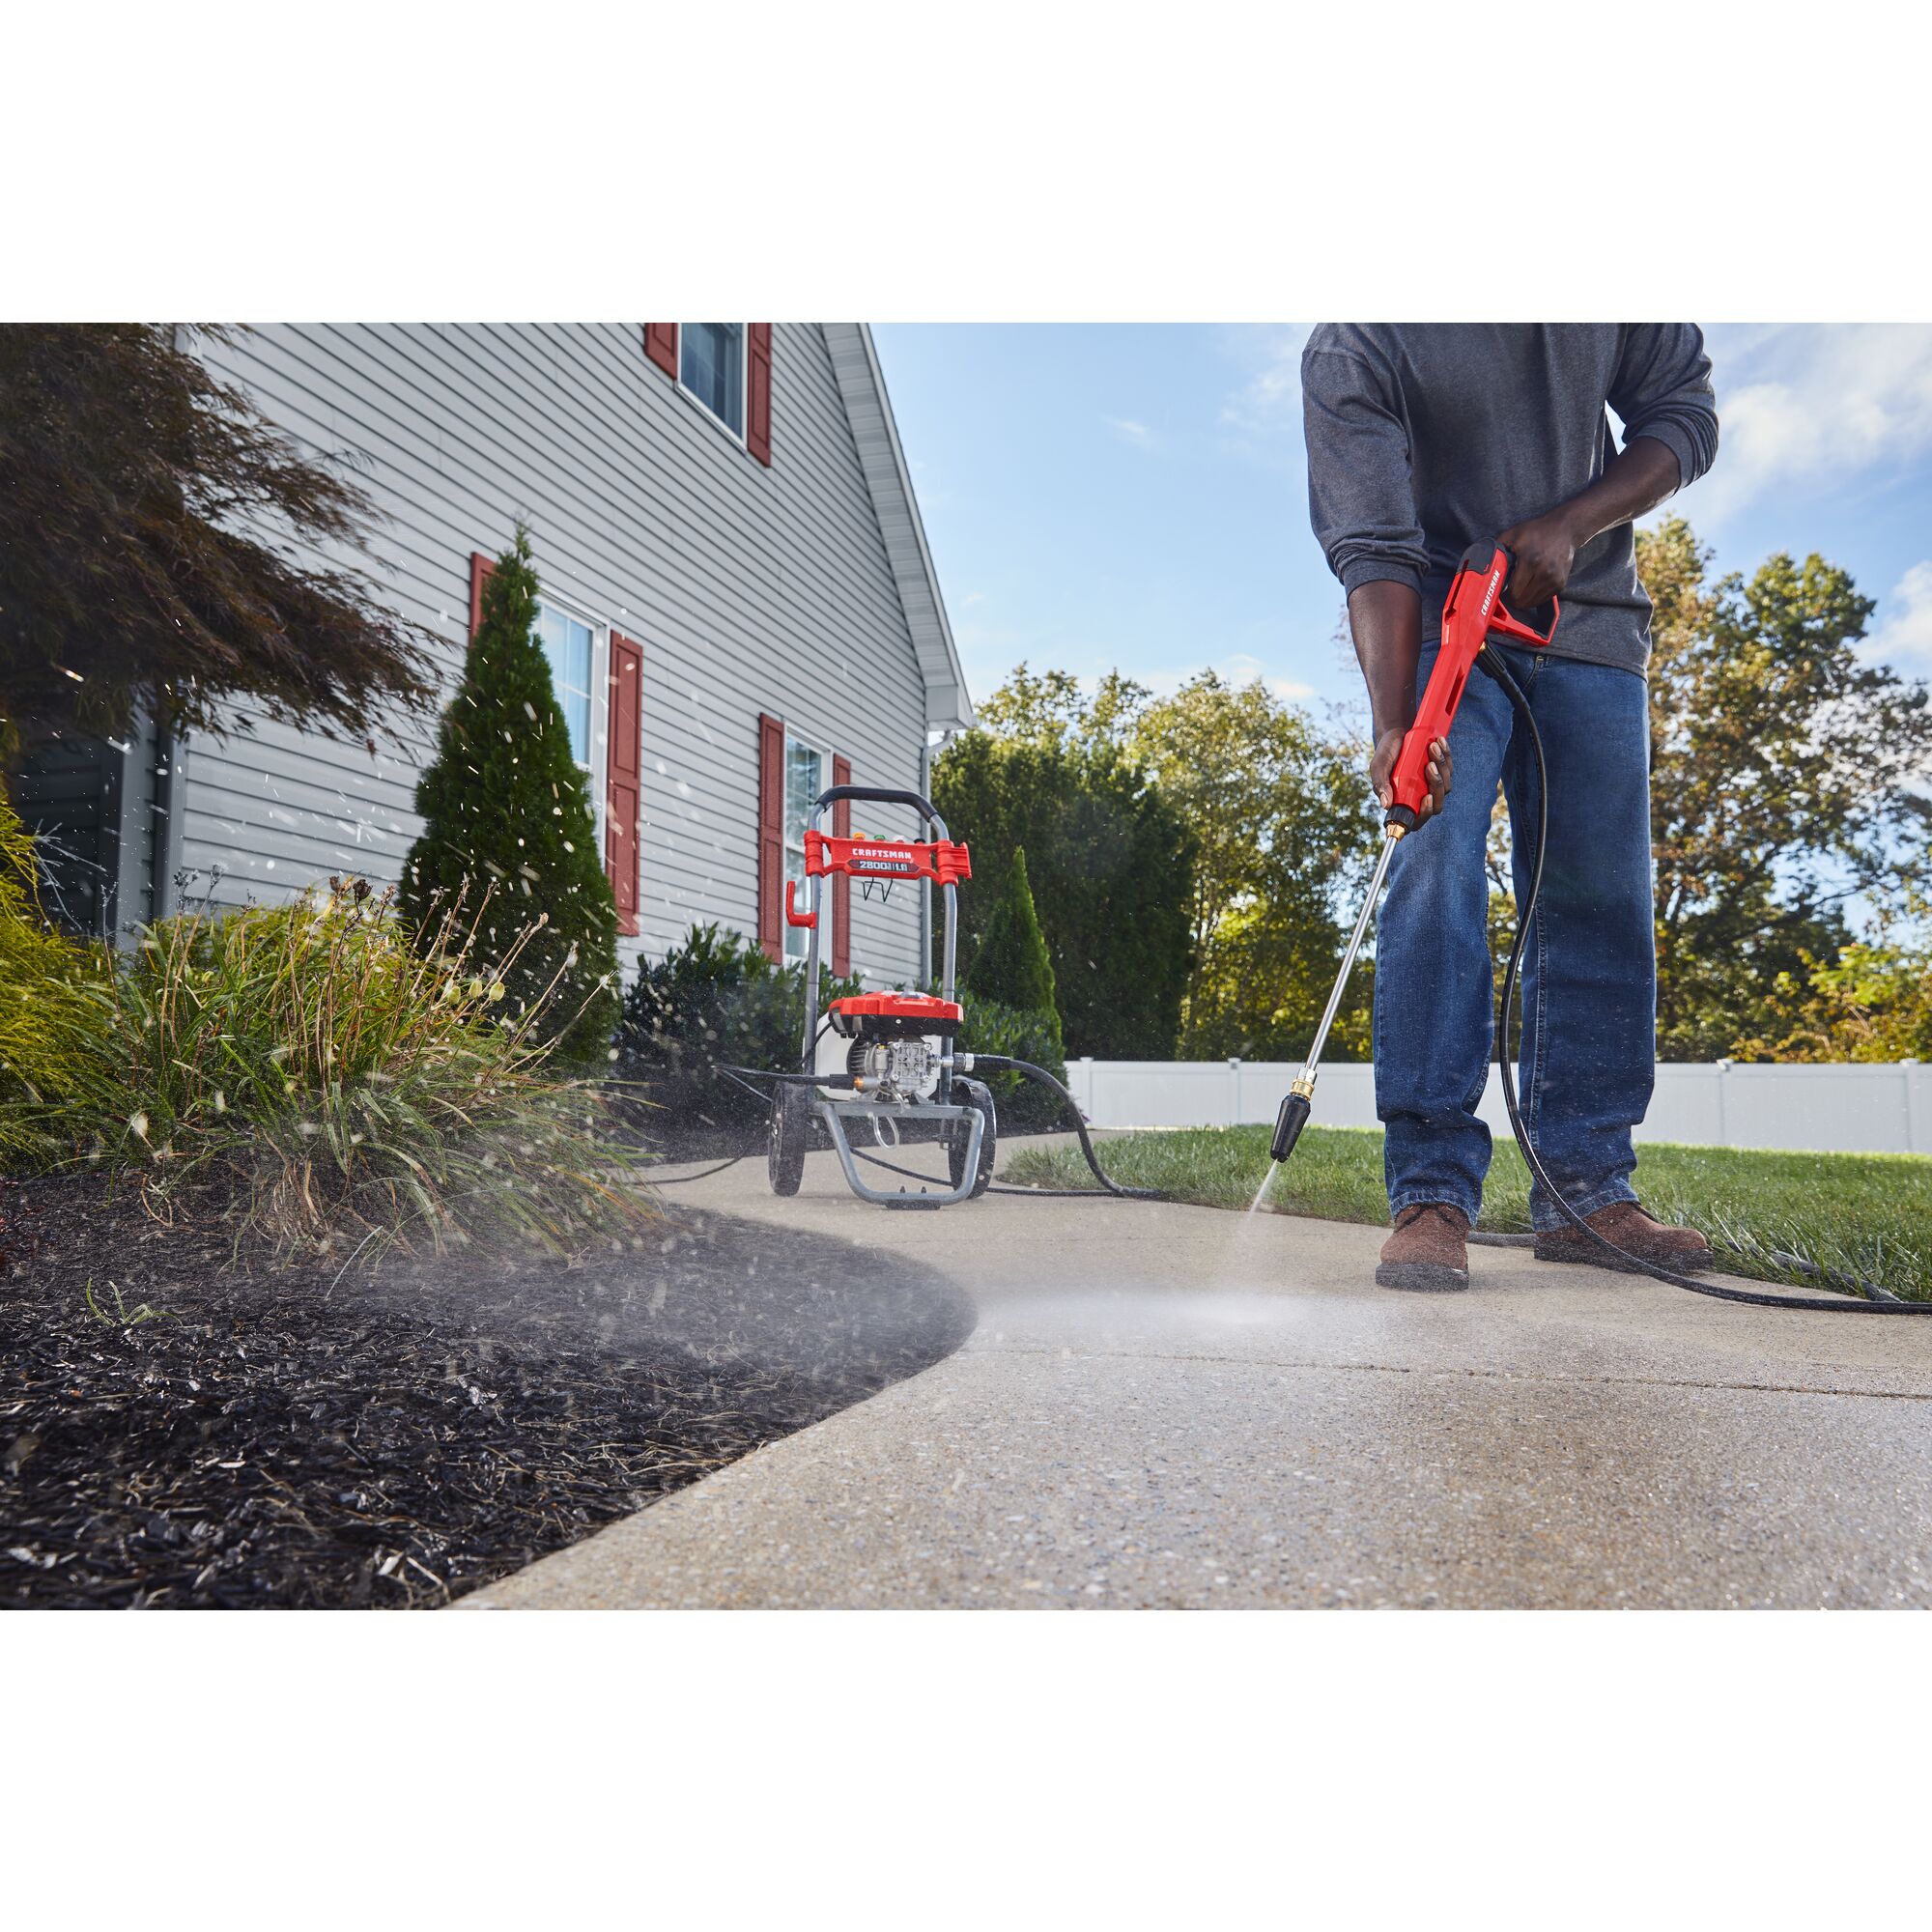 CRAFTSMAN 2800 Pressure Washer pressure washing sidewalk with flowerbed in background